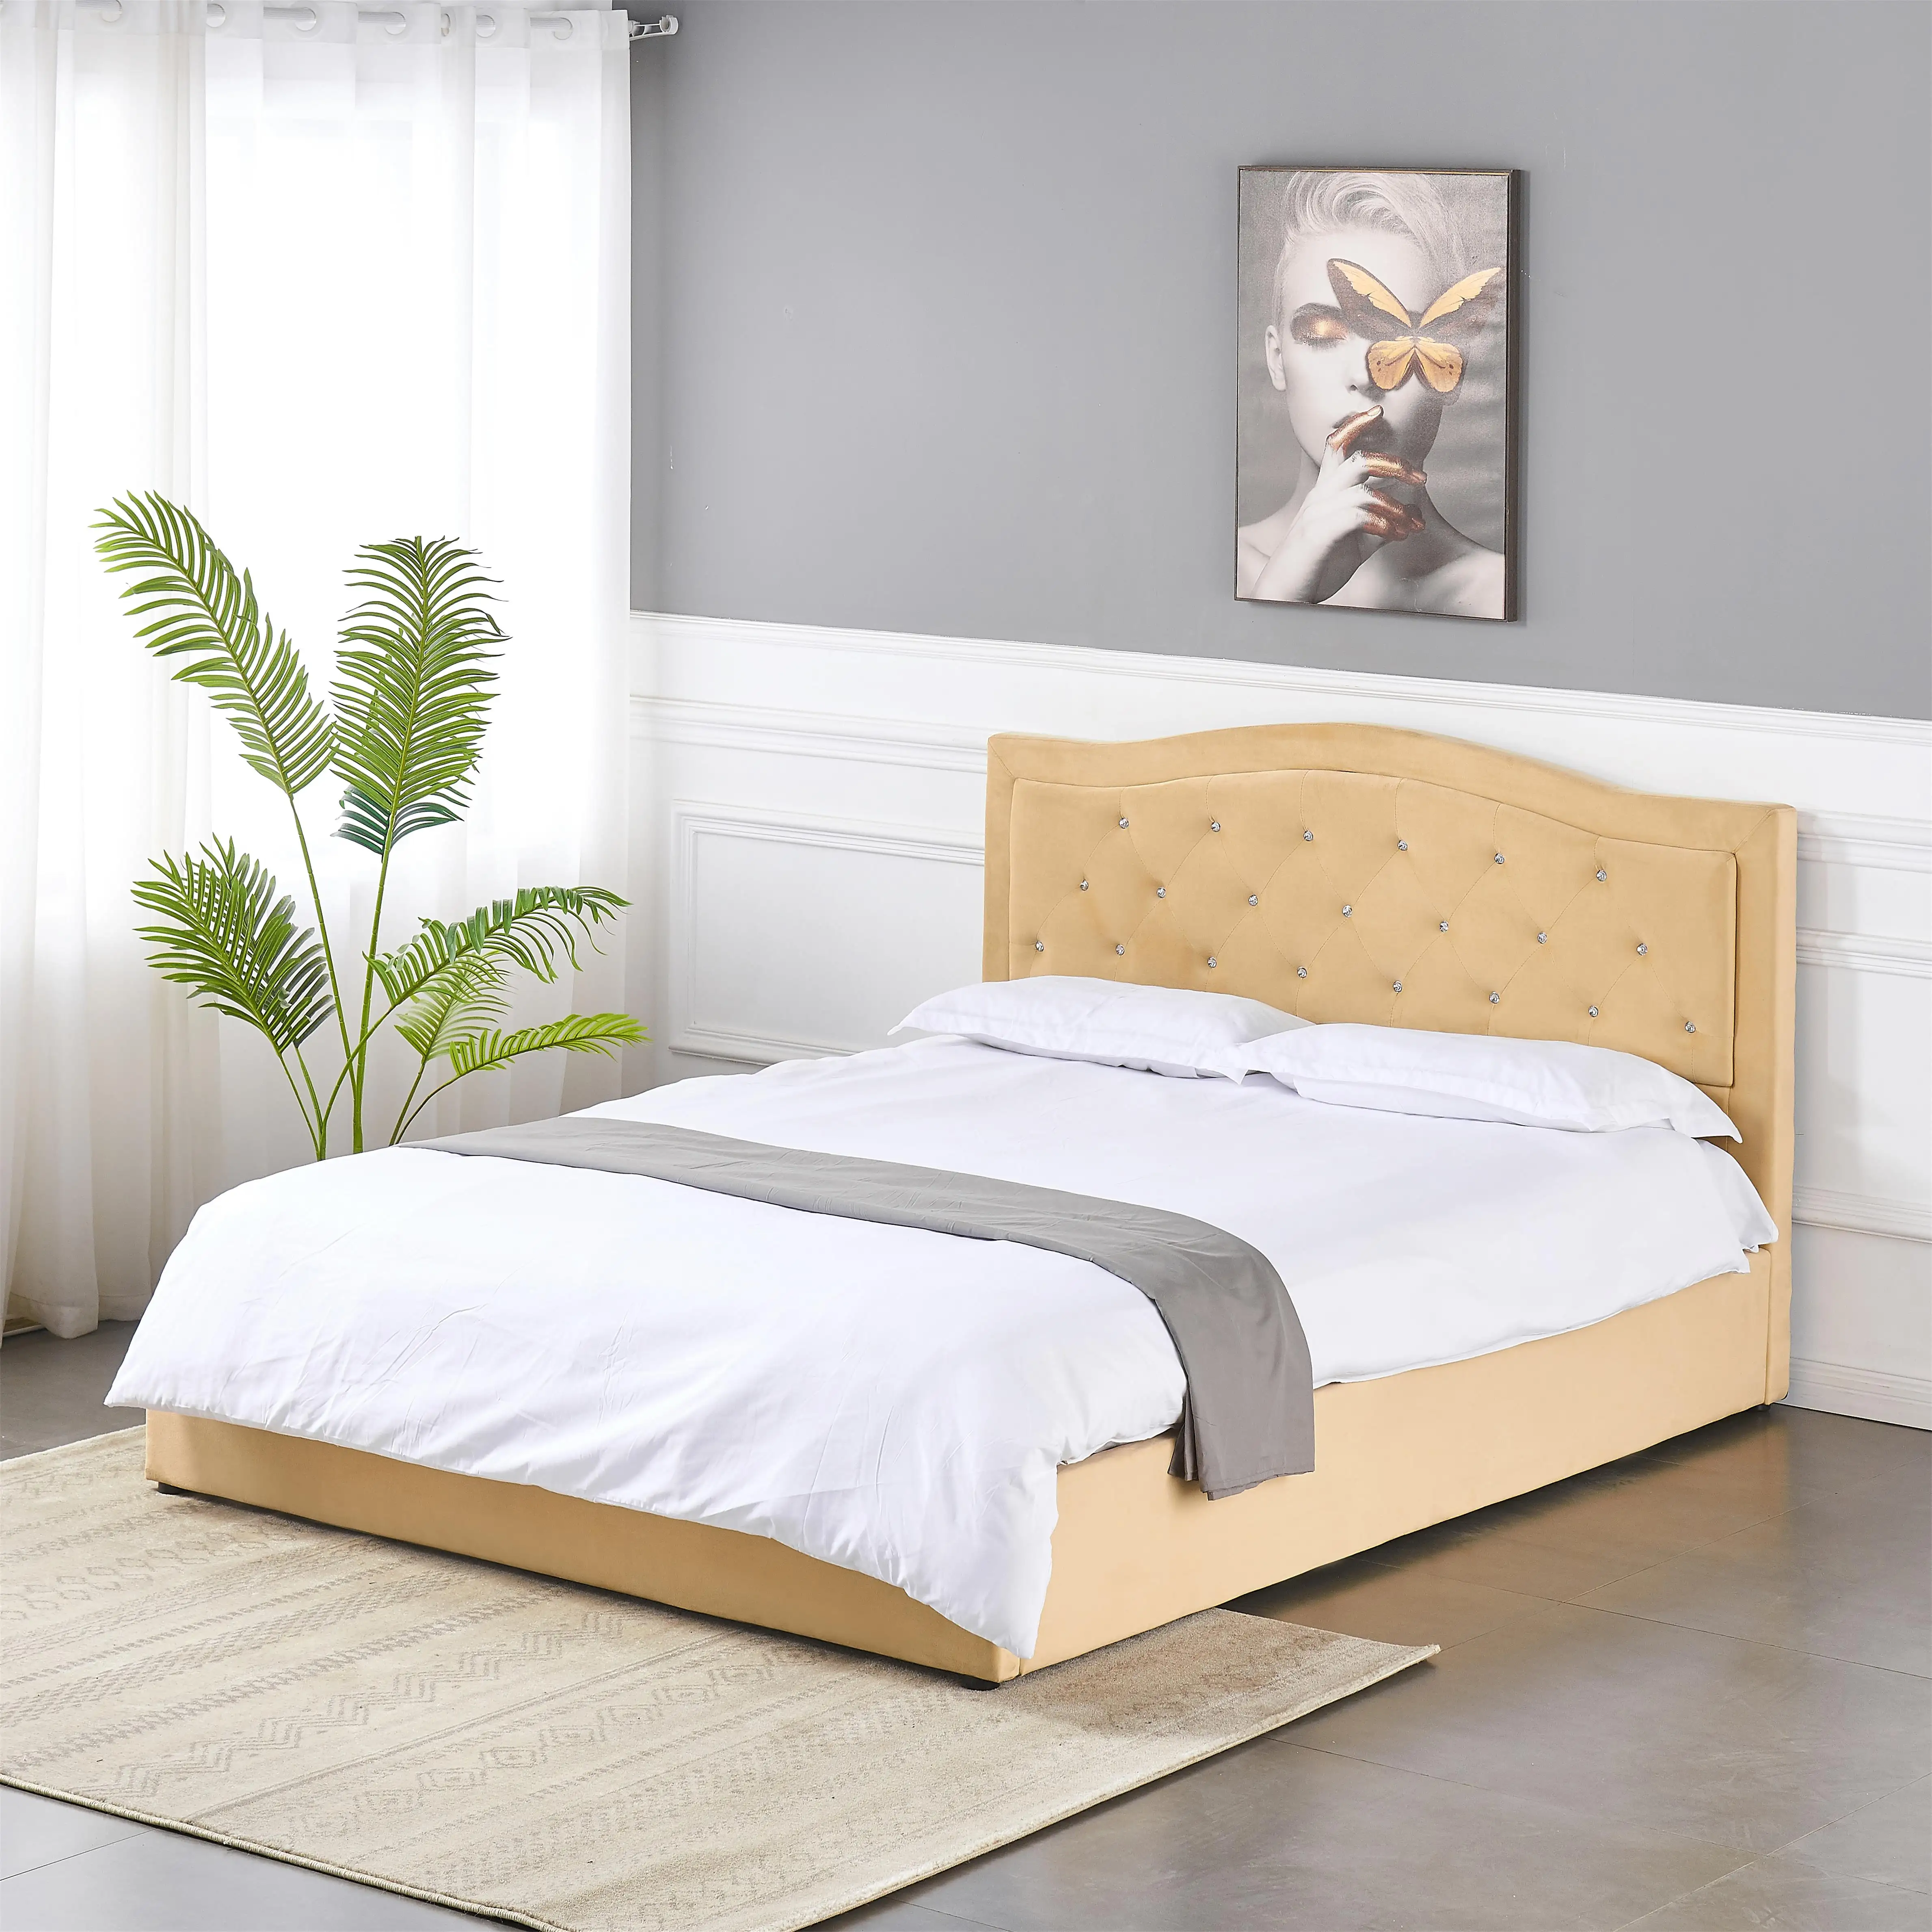 Venta al por mayor cama king size de lujo Queen tapizado plataforma otomana cama de almacenamiento Marco de cama de madera conjunto de muebles de dormitorio